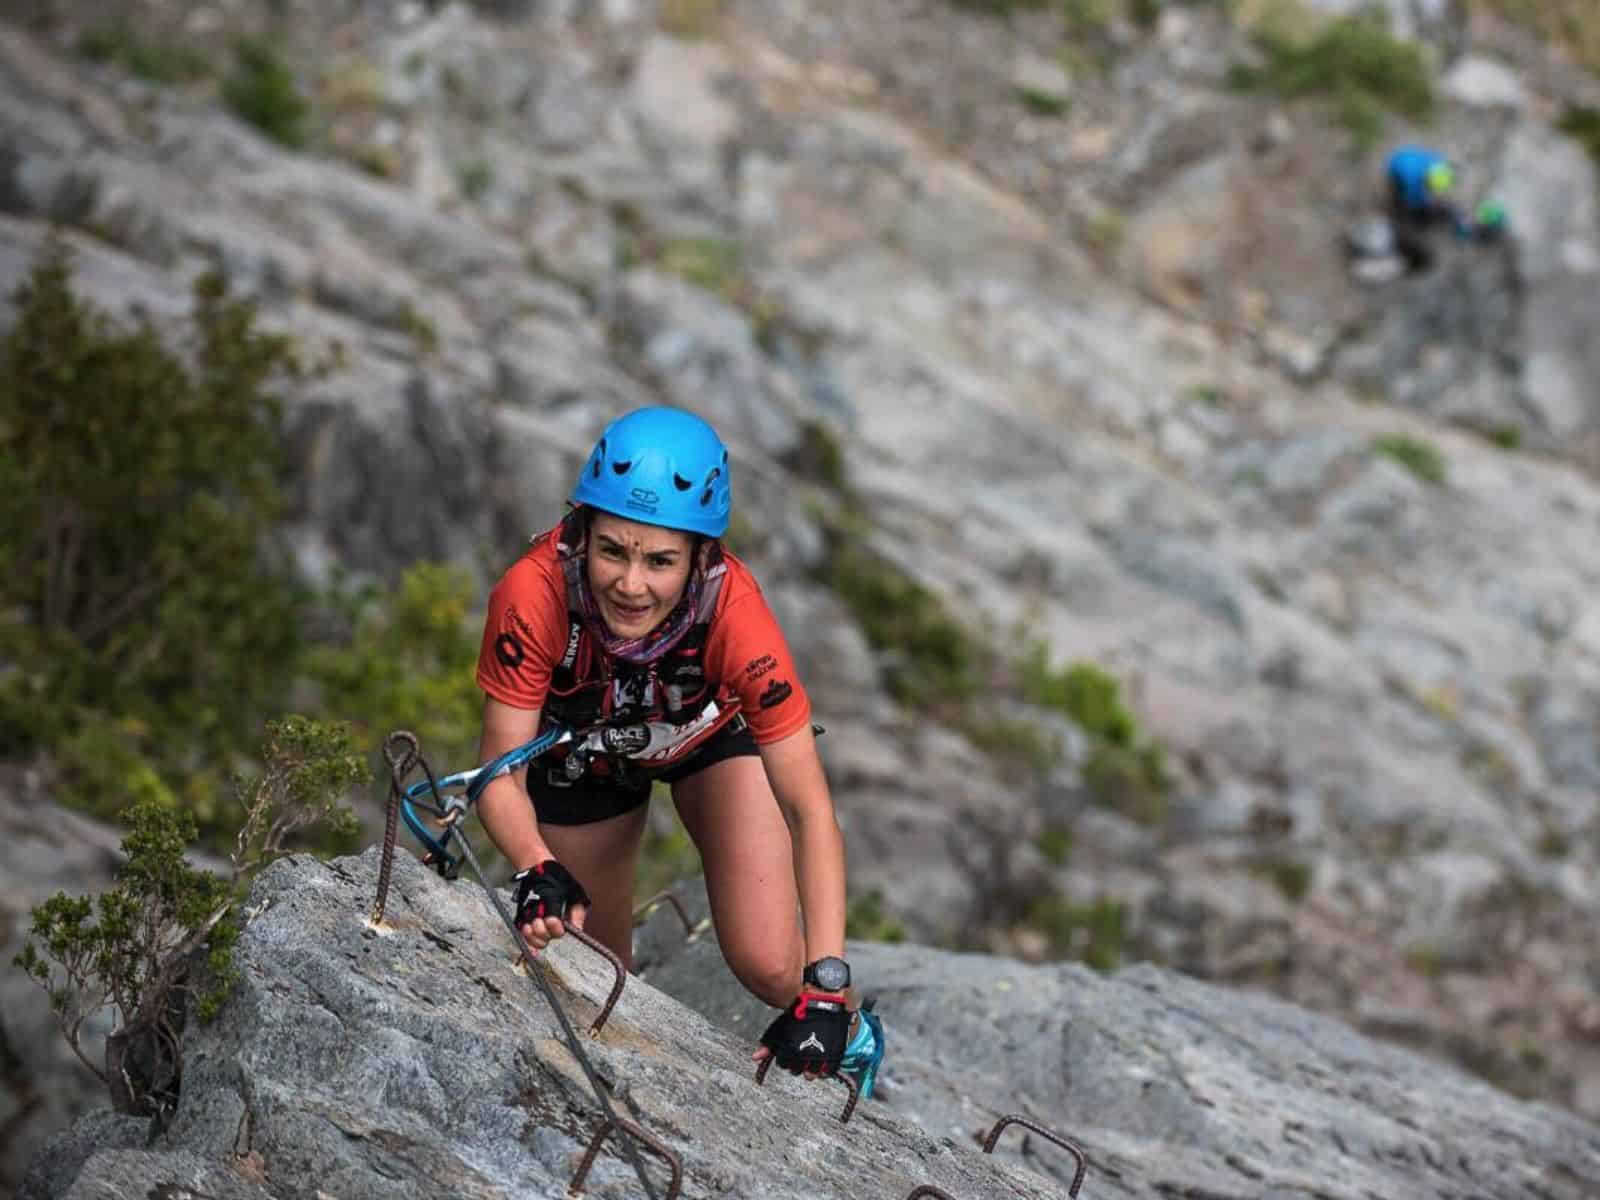 Descripción: Una mujer está escalando una montaña rocosa.